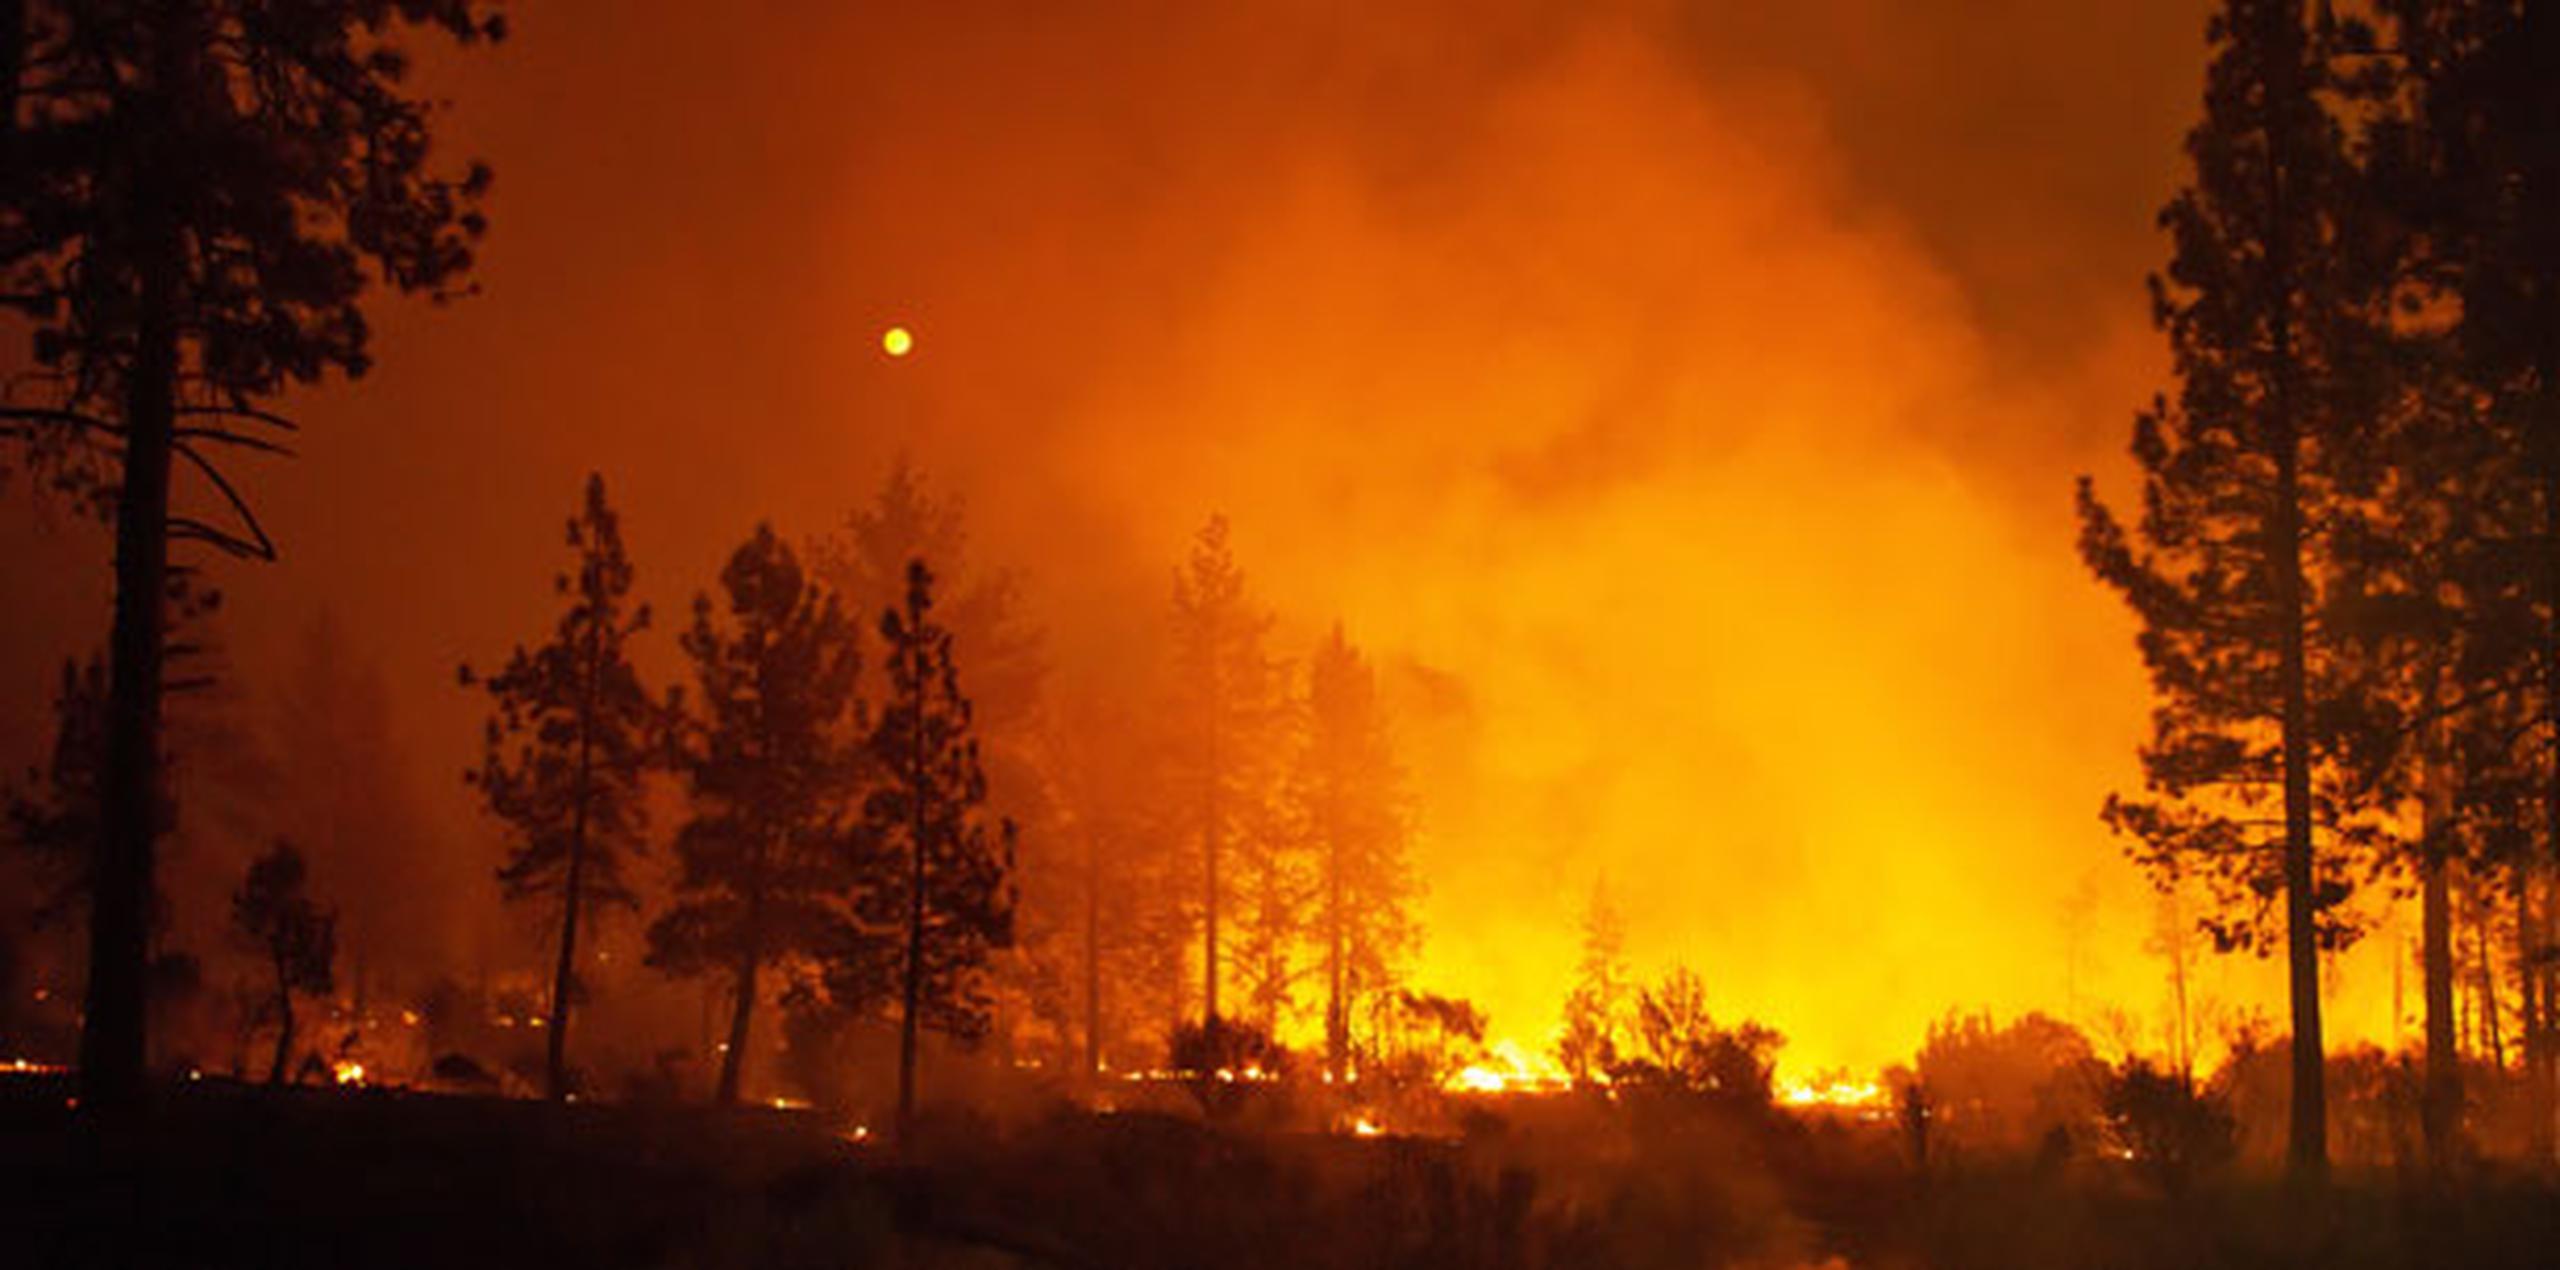 Los incendios han destruido seis casas y puesto en peligro a otras 10,000 viviendas. (EFE)